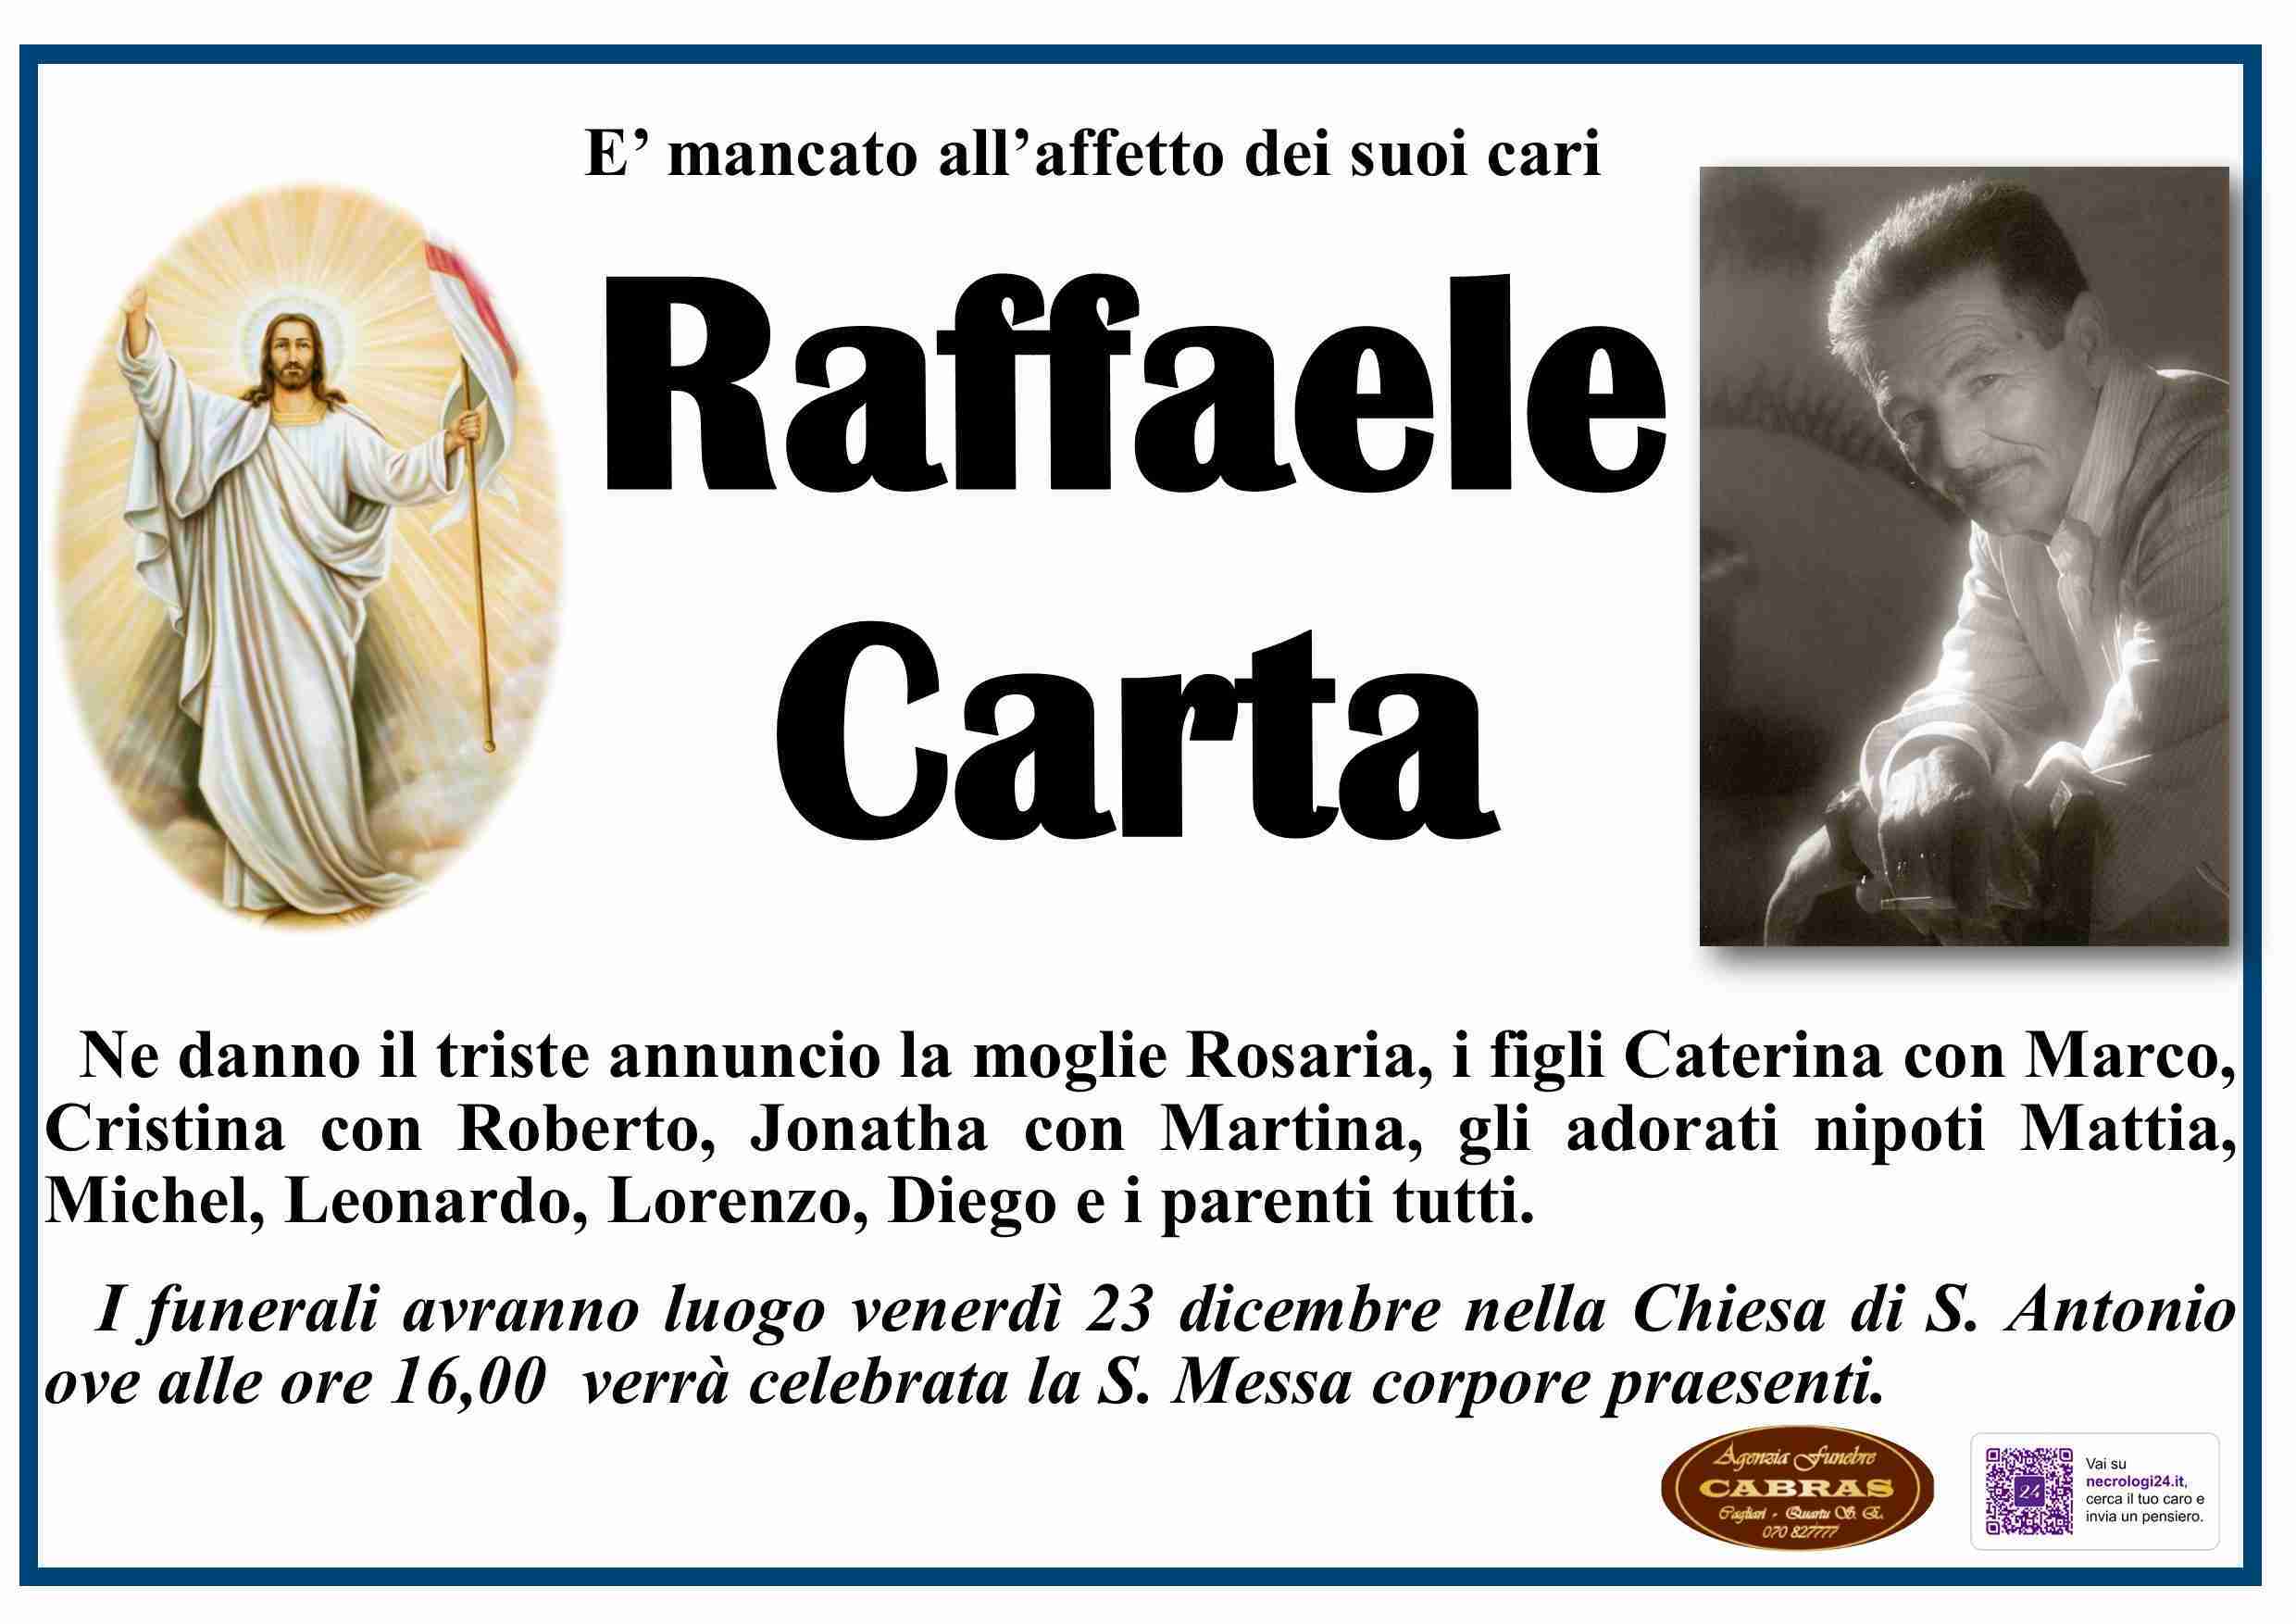 Raffaele Carta